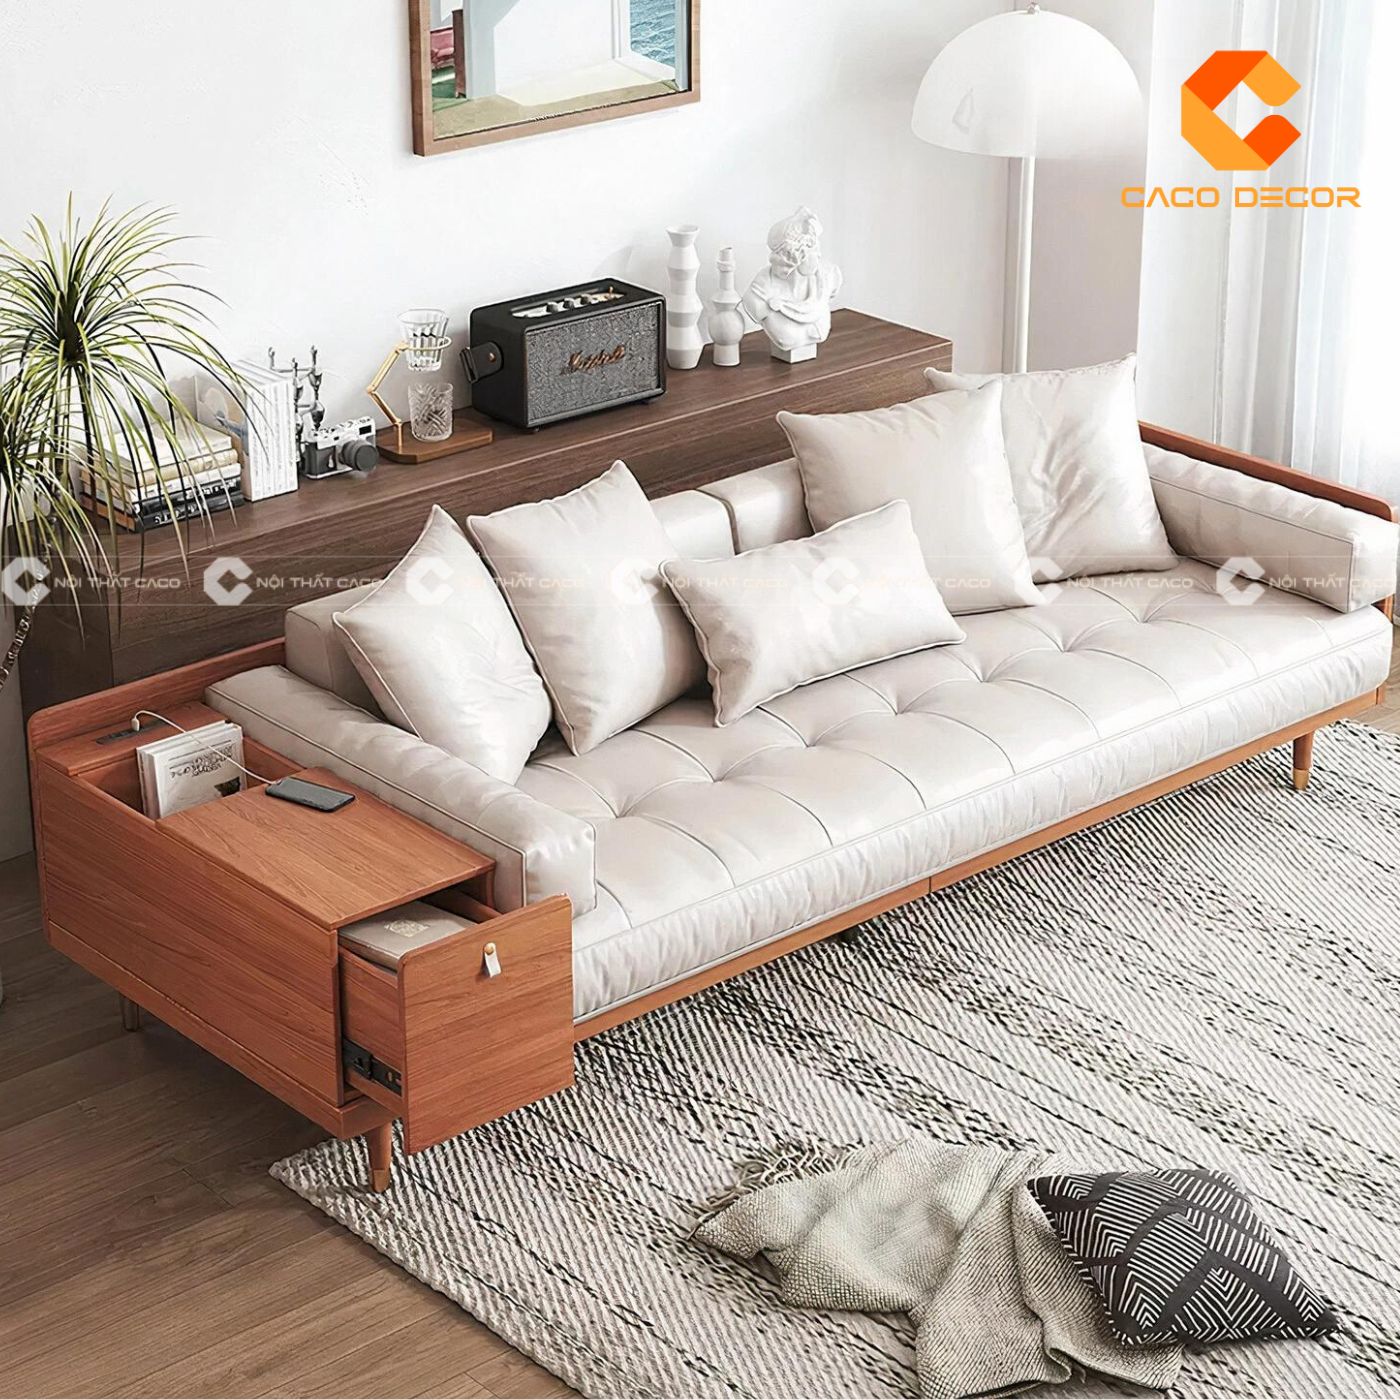 Sofa gỗ hiện đại lựa chọn hoàn hảo cho phòng khách chung cư 3